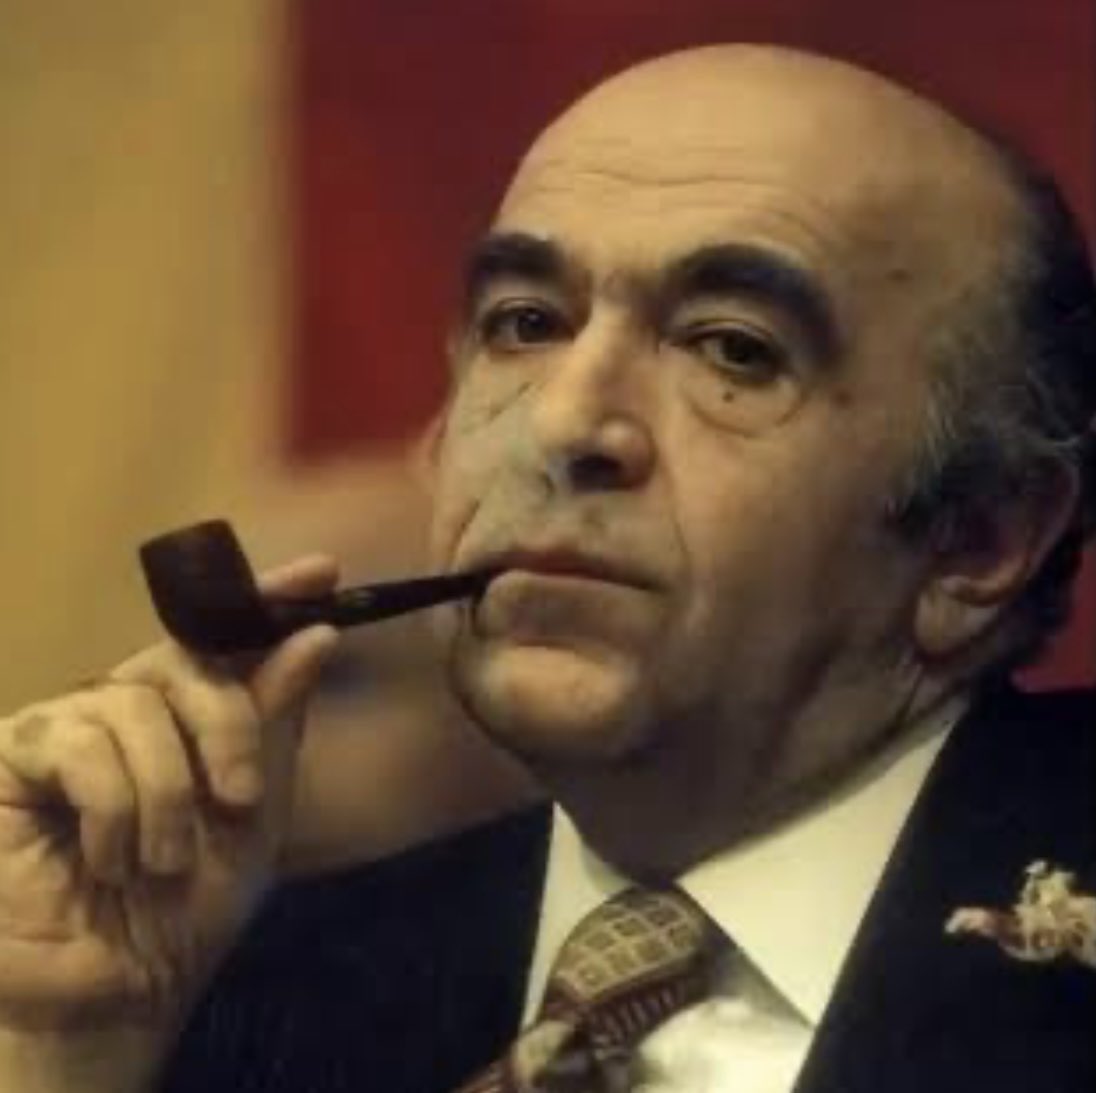 بعد از امیرکبیر یک وزیر خوب و کاردان داشتیم، که فدای توحش ارتجاع سرخ و سیاه شد💔

مردی که پیپ اش به کُل ج.ا می ارزید.
#امیرعباس_هویدا